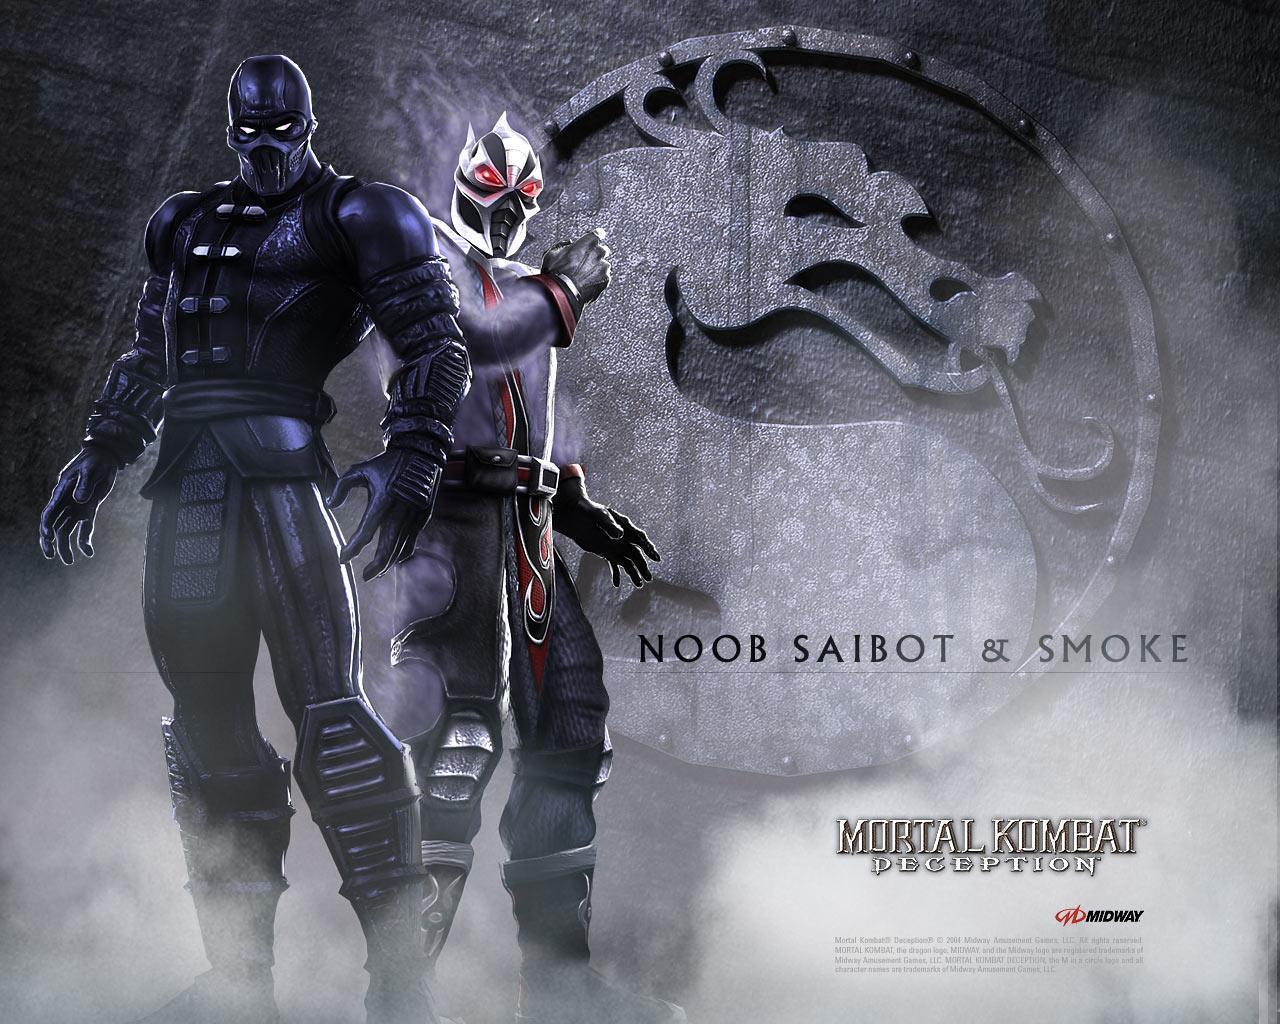 Smoke and Noob Saibot. Mortal kombat, Noob saibot, Mortal kombat